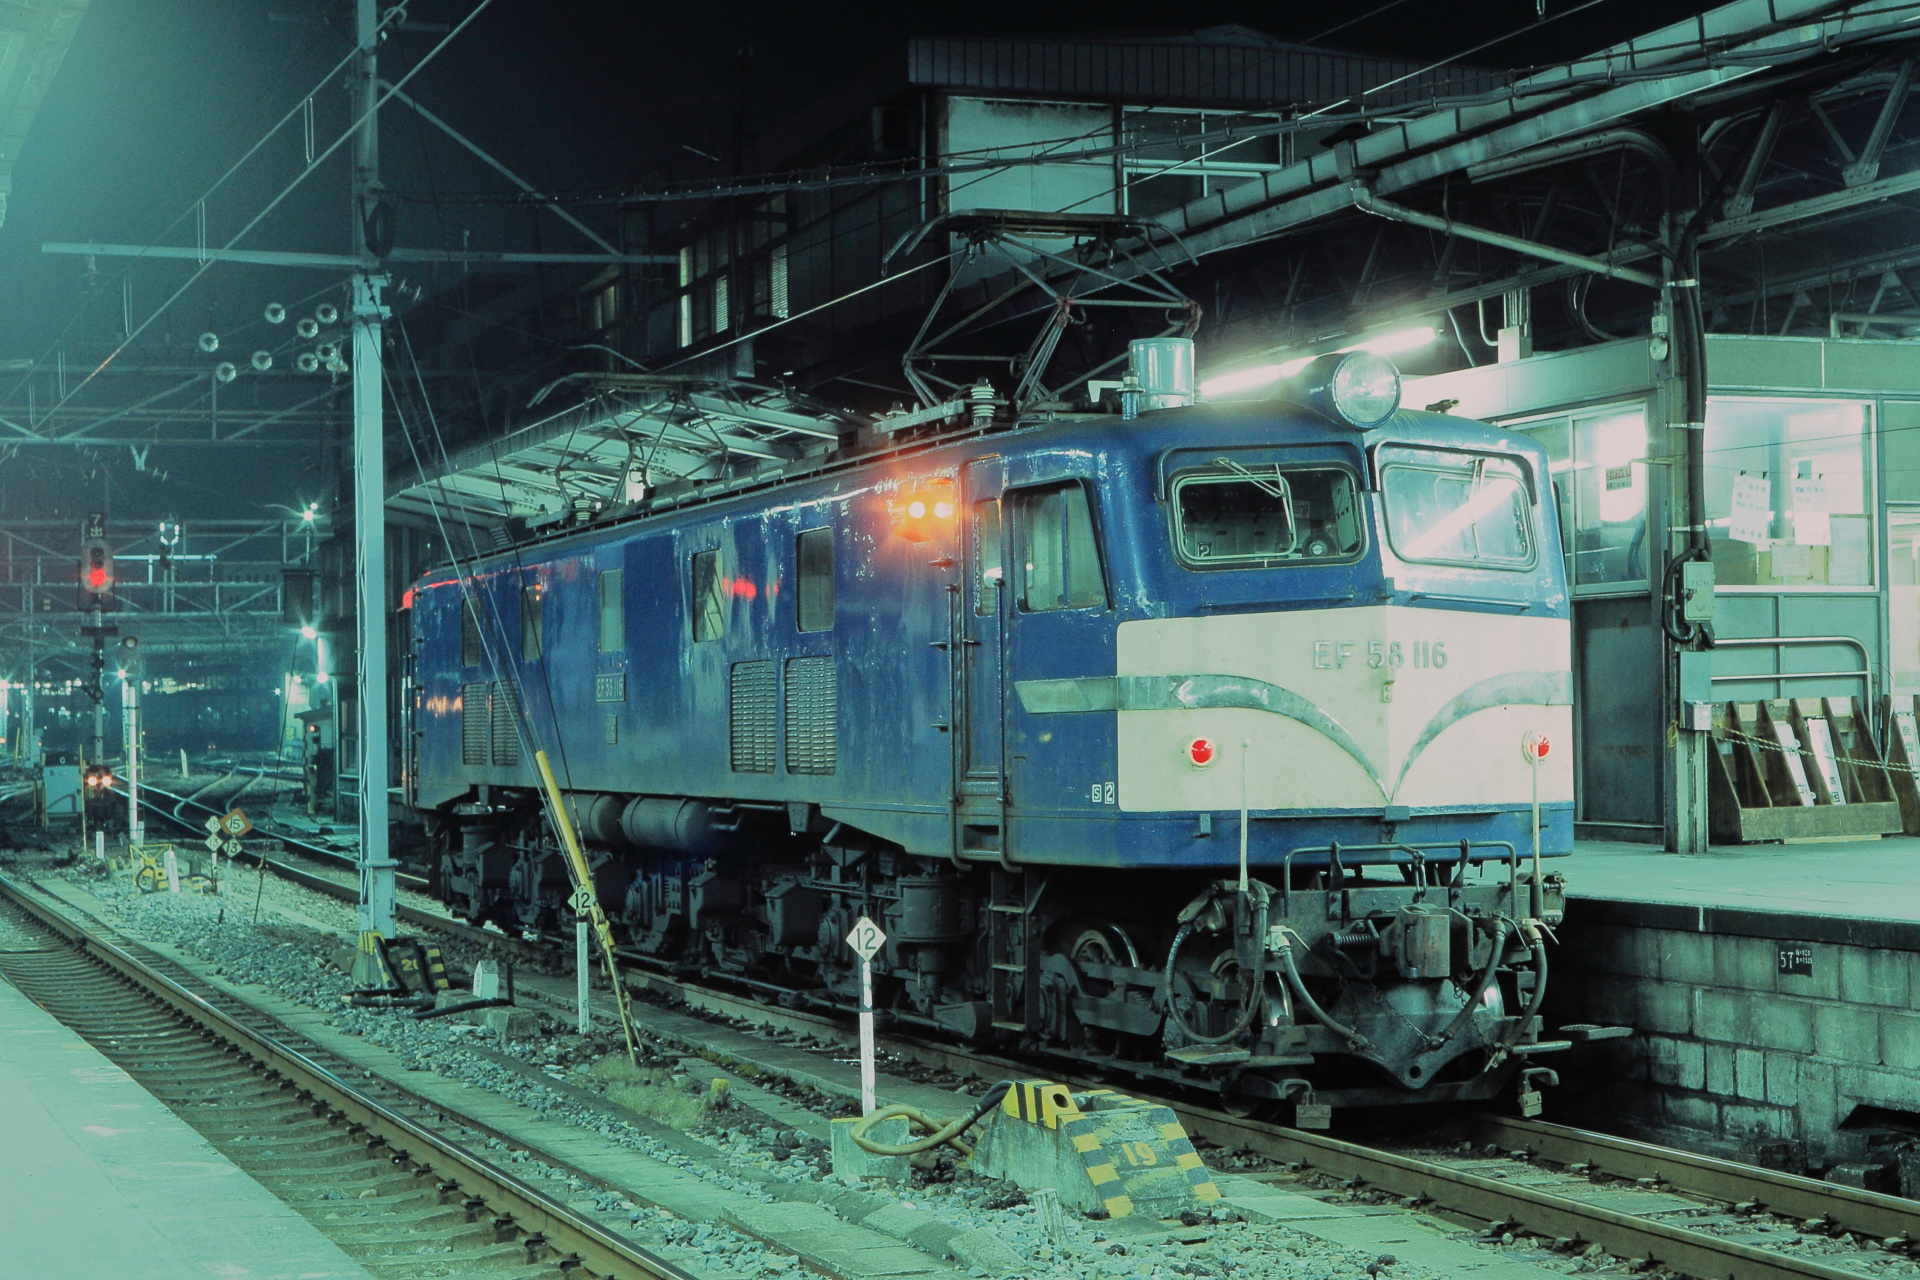 鉄道 電気機関車 昭和の鉄道75 夜のゴハチ 壁紙19x1280 壁紙館